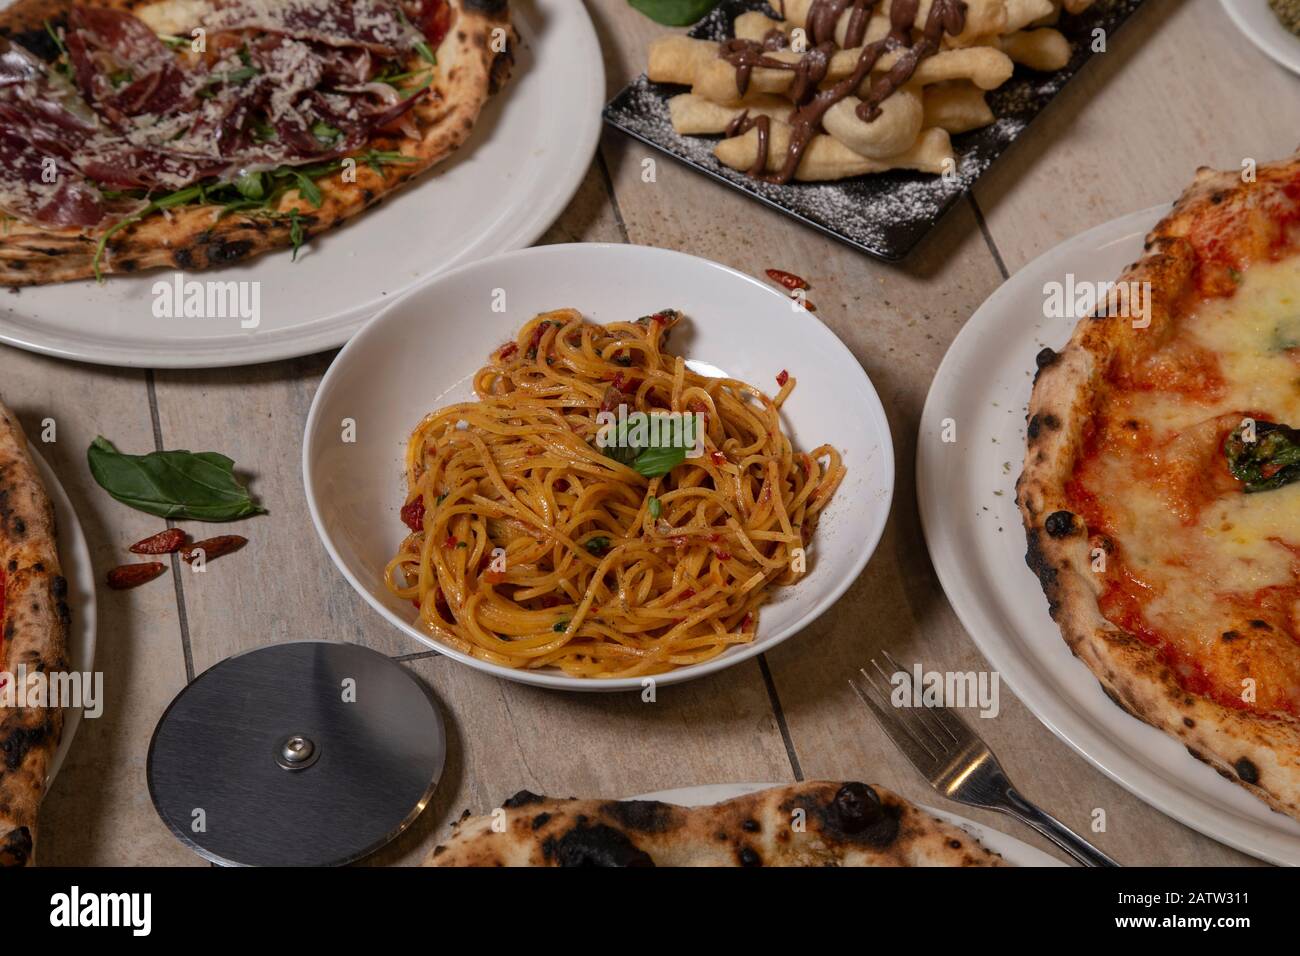 Piatti tradizionali italiani. Spaghetti, pizze, tipico dessert napoletano con nutella. Immagine isolata. Cucina mediterranea. Foto Stock